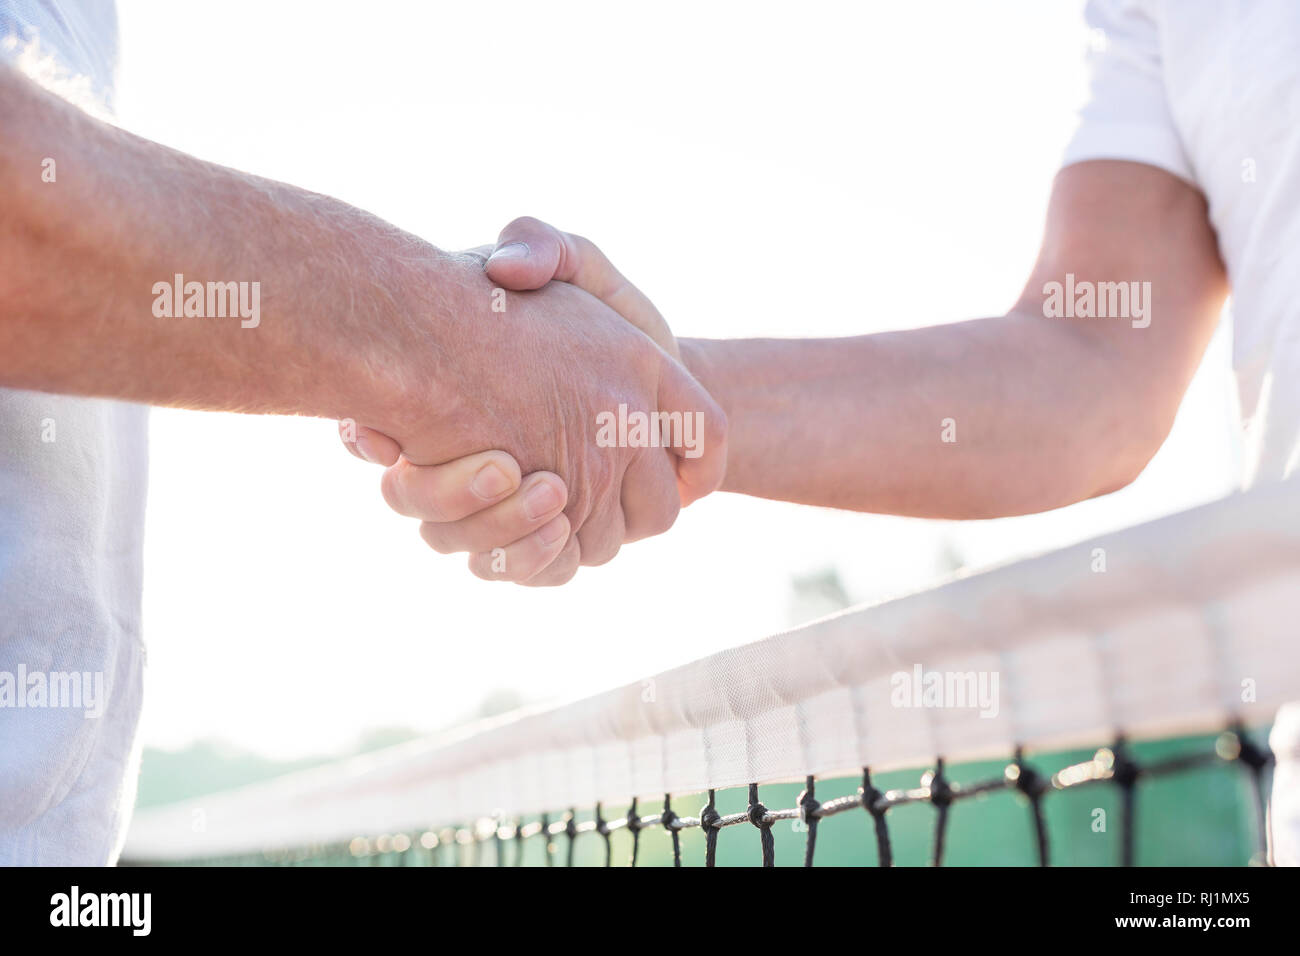 Au milieu d'hommes se serrer la main alors qu'il se trouvait à court de tennis contre ciel clair Banque D'Images